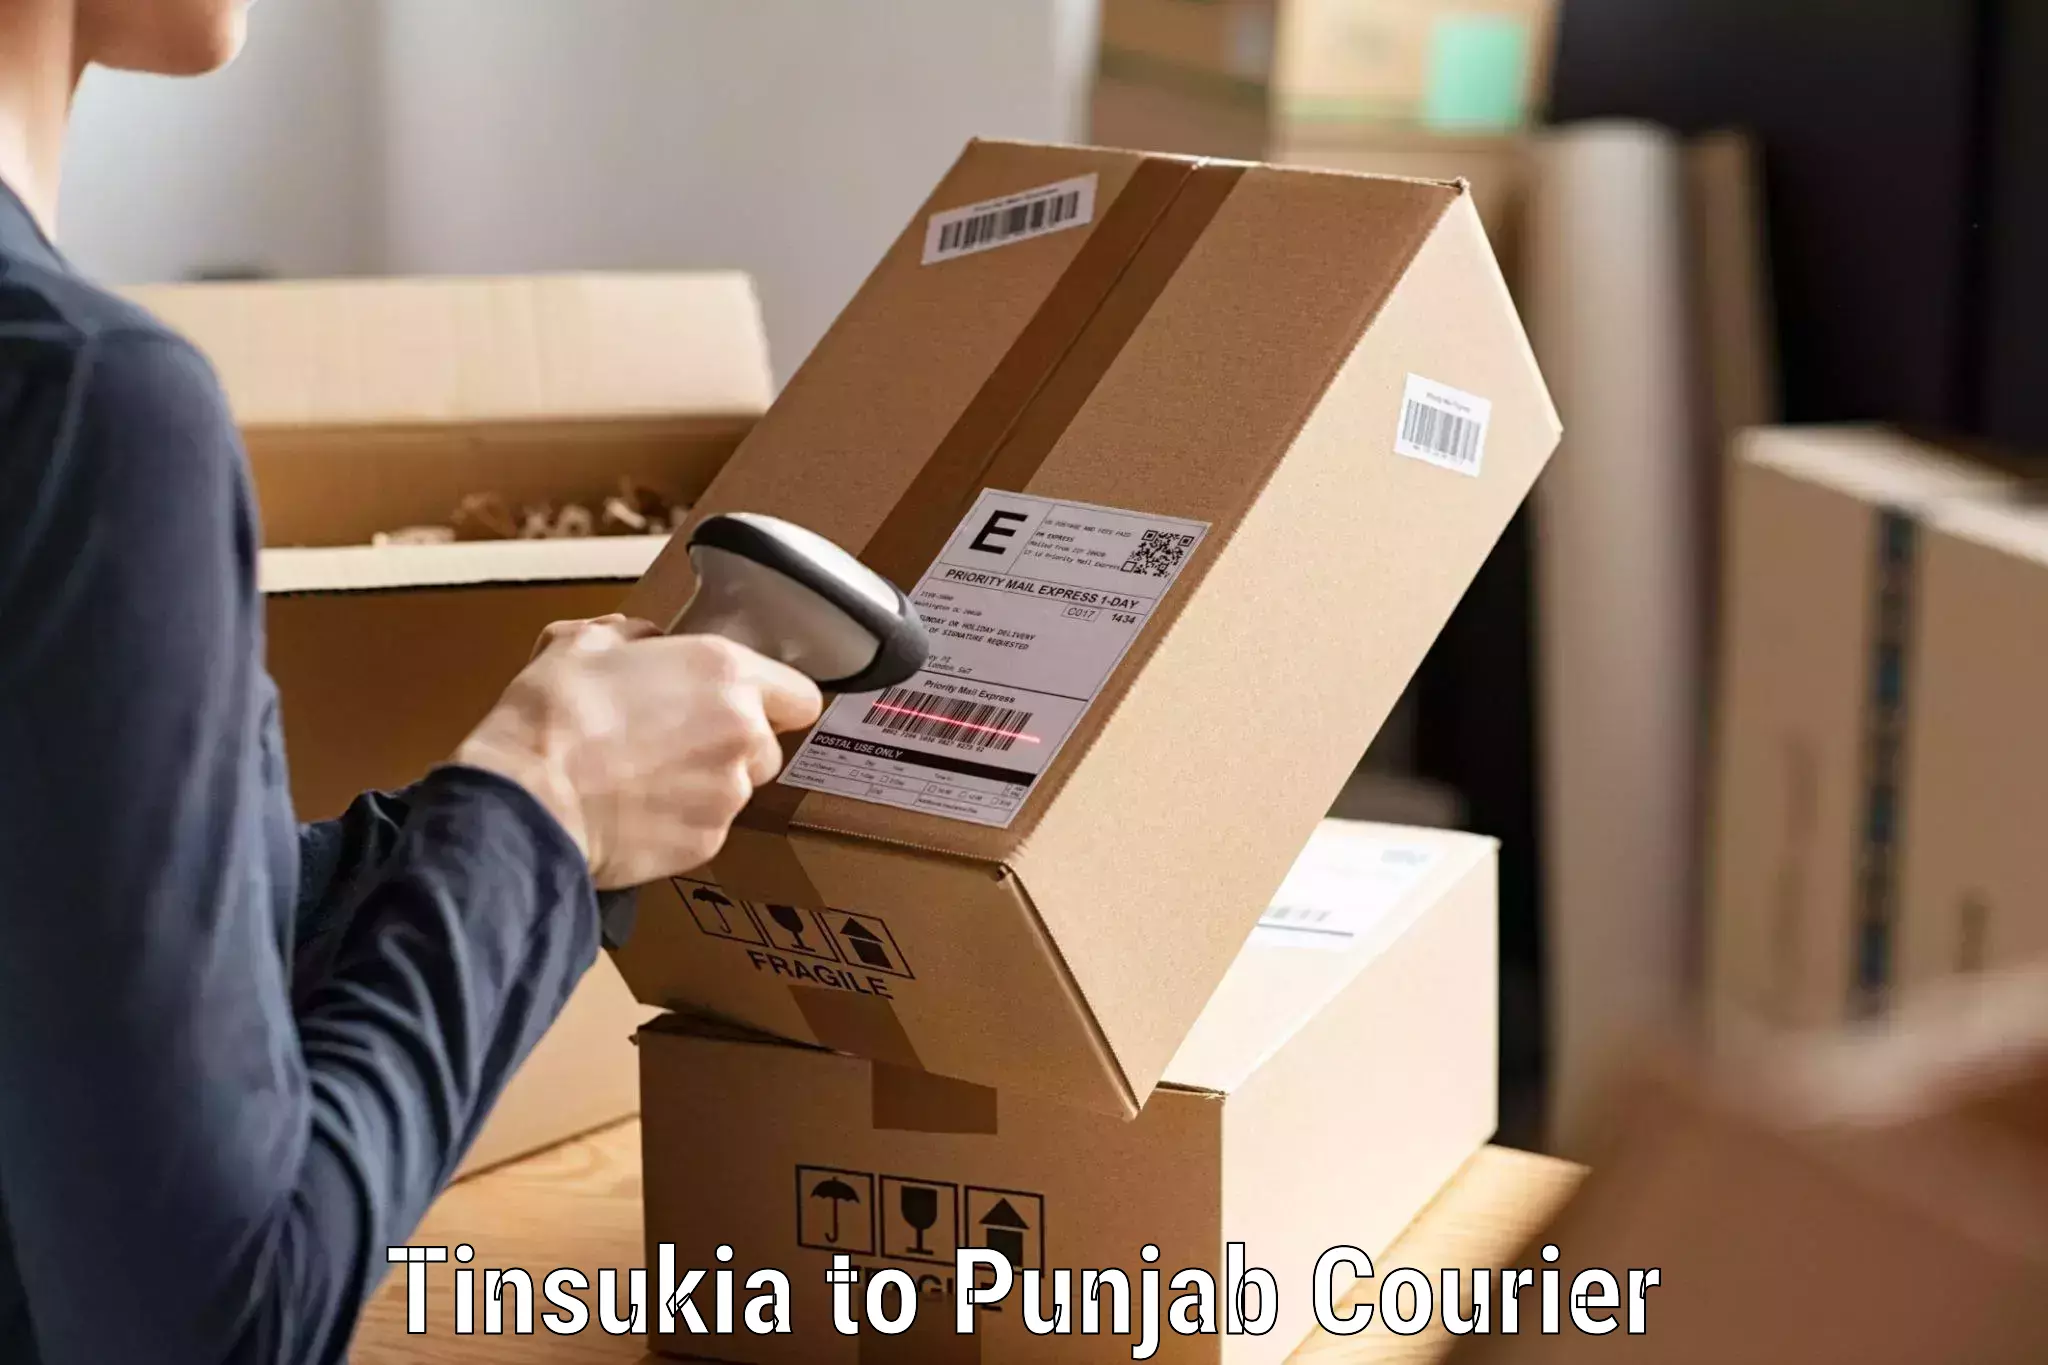 Secure shipping methods Tinsukia to Central University of Punjab Bathinda